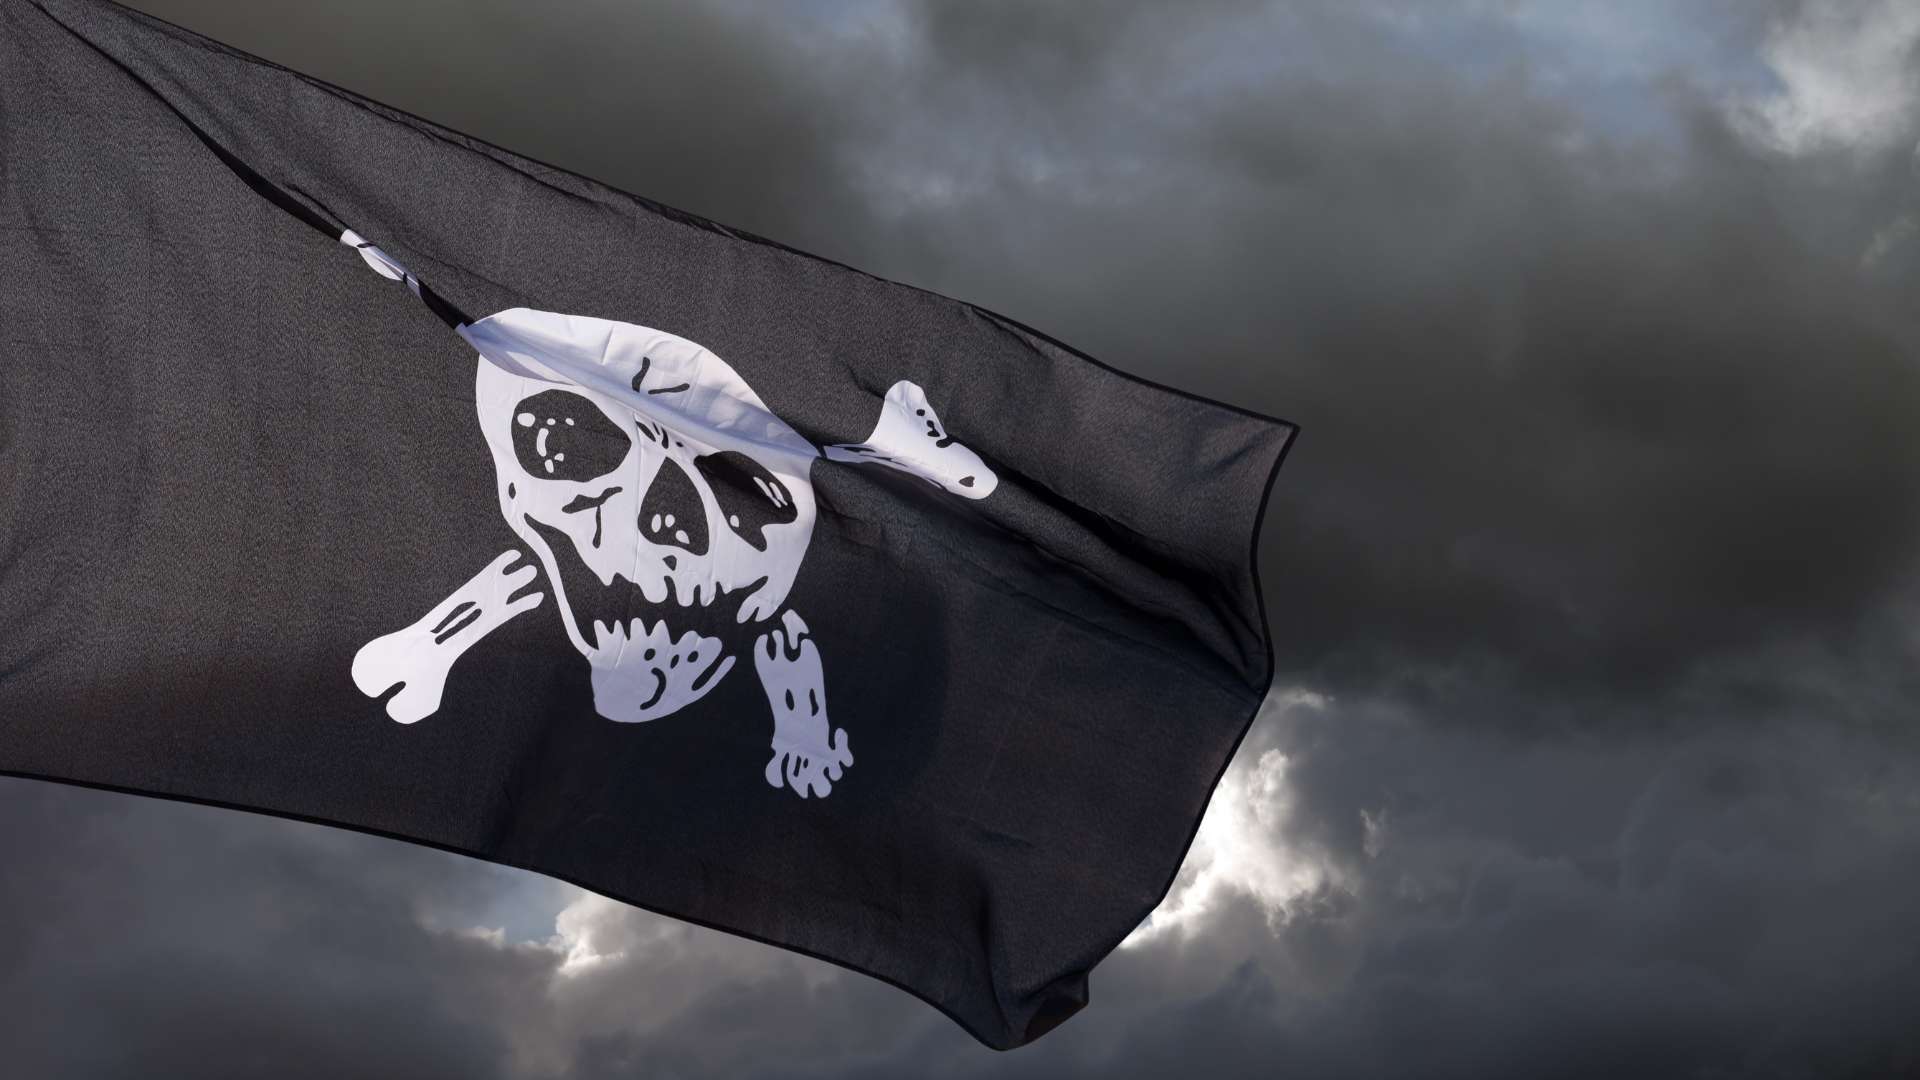 L'histoire et les Origines du Drapeau Pirate : Le Jolly Roger